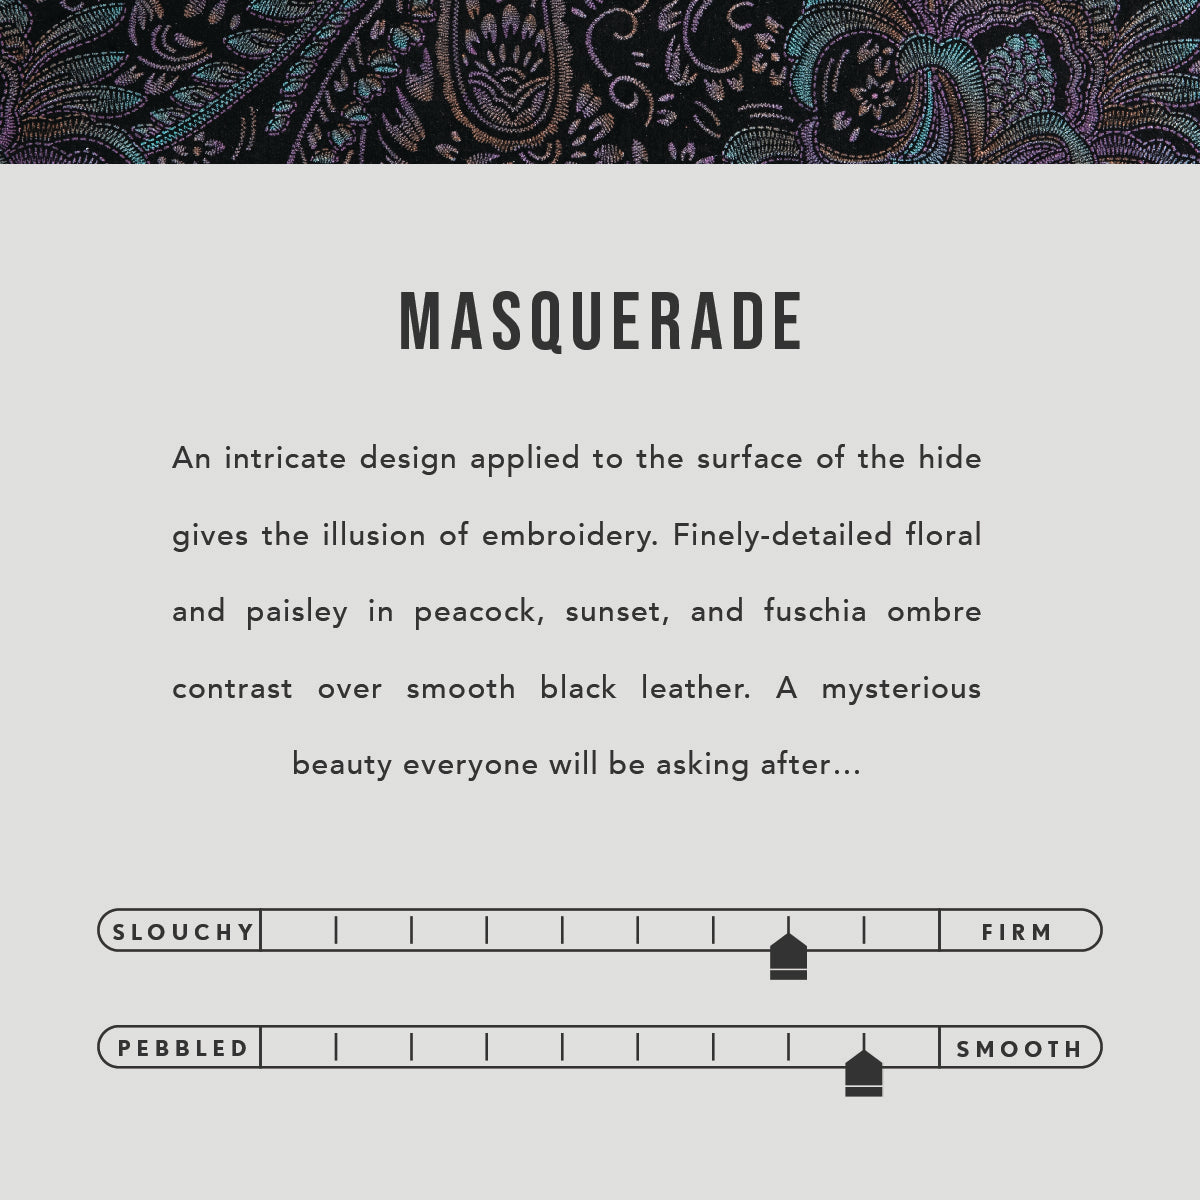 Masquerade | infographic